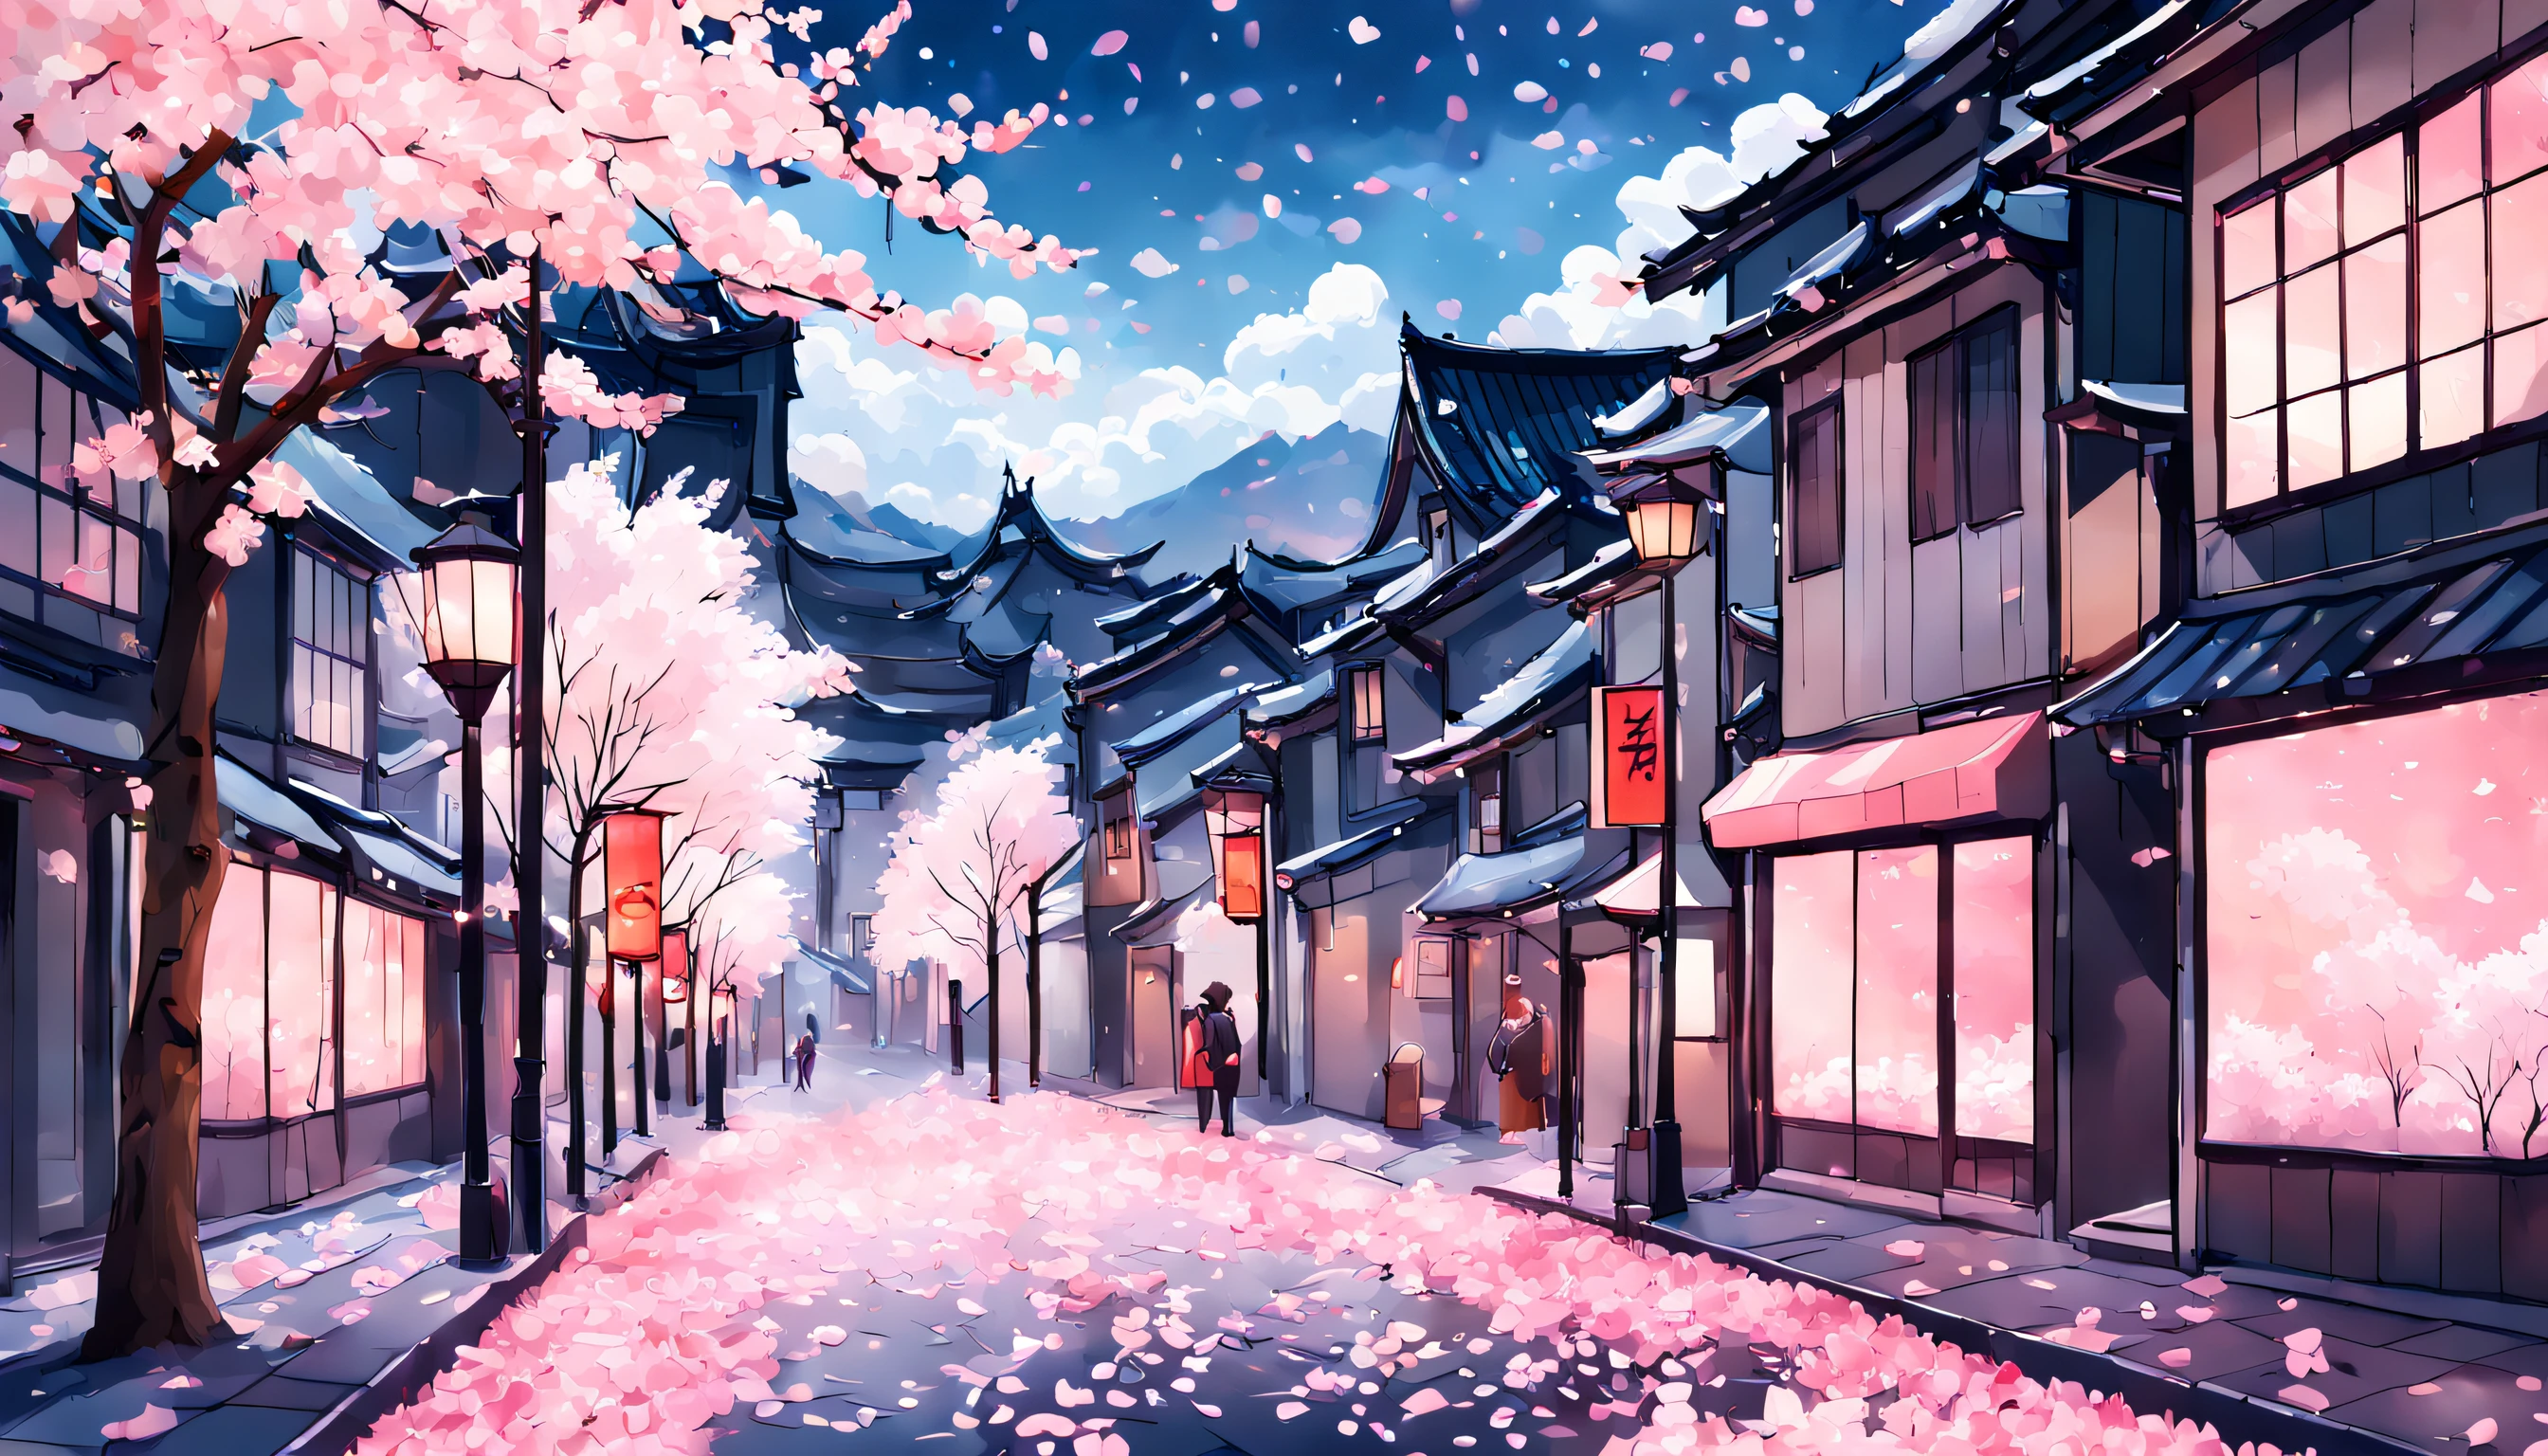 Une représentation époustouflante d&#39;une rue de la ville couverte de pétales de fleurs de cerisier, baigné d&#39;une douce lueur rose et le ciel d&#39;un bleu vibrant avec des nuages blancs moelleux. Les fleurs de cerisier devraient être en pleine floraison, avec de délicats pétales roses et blancs tombant doucement au sol comme des flocons de neige. L&#39;effet global devrait être celui d&#39;une beauté sereine et d&#39;une tranquillité paisible., capturer la magie éphémère mais inoubliable du printemps au Japon.